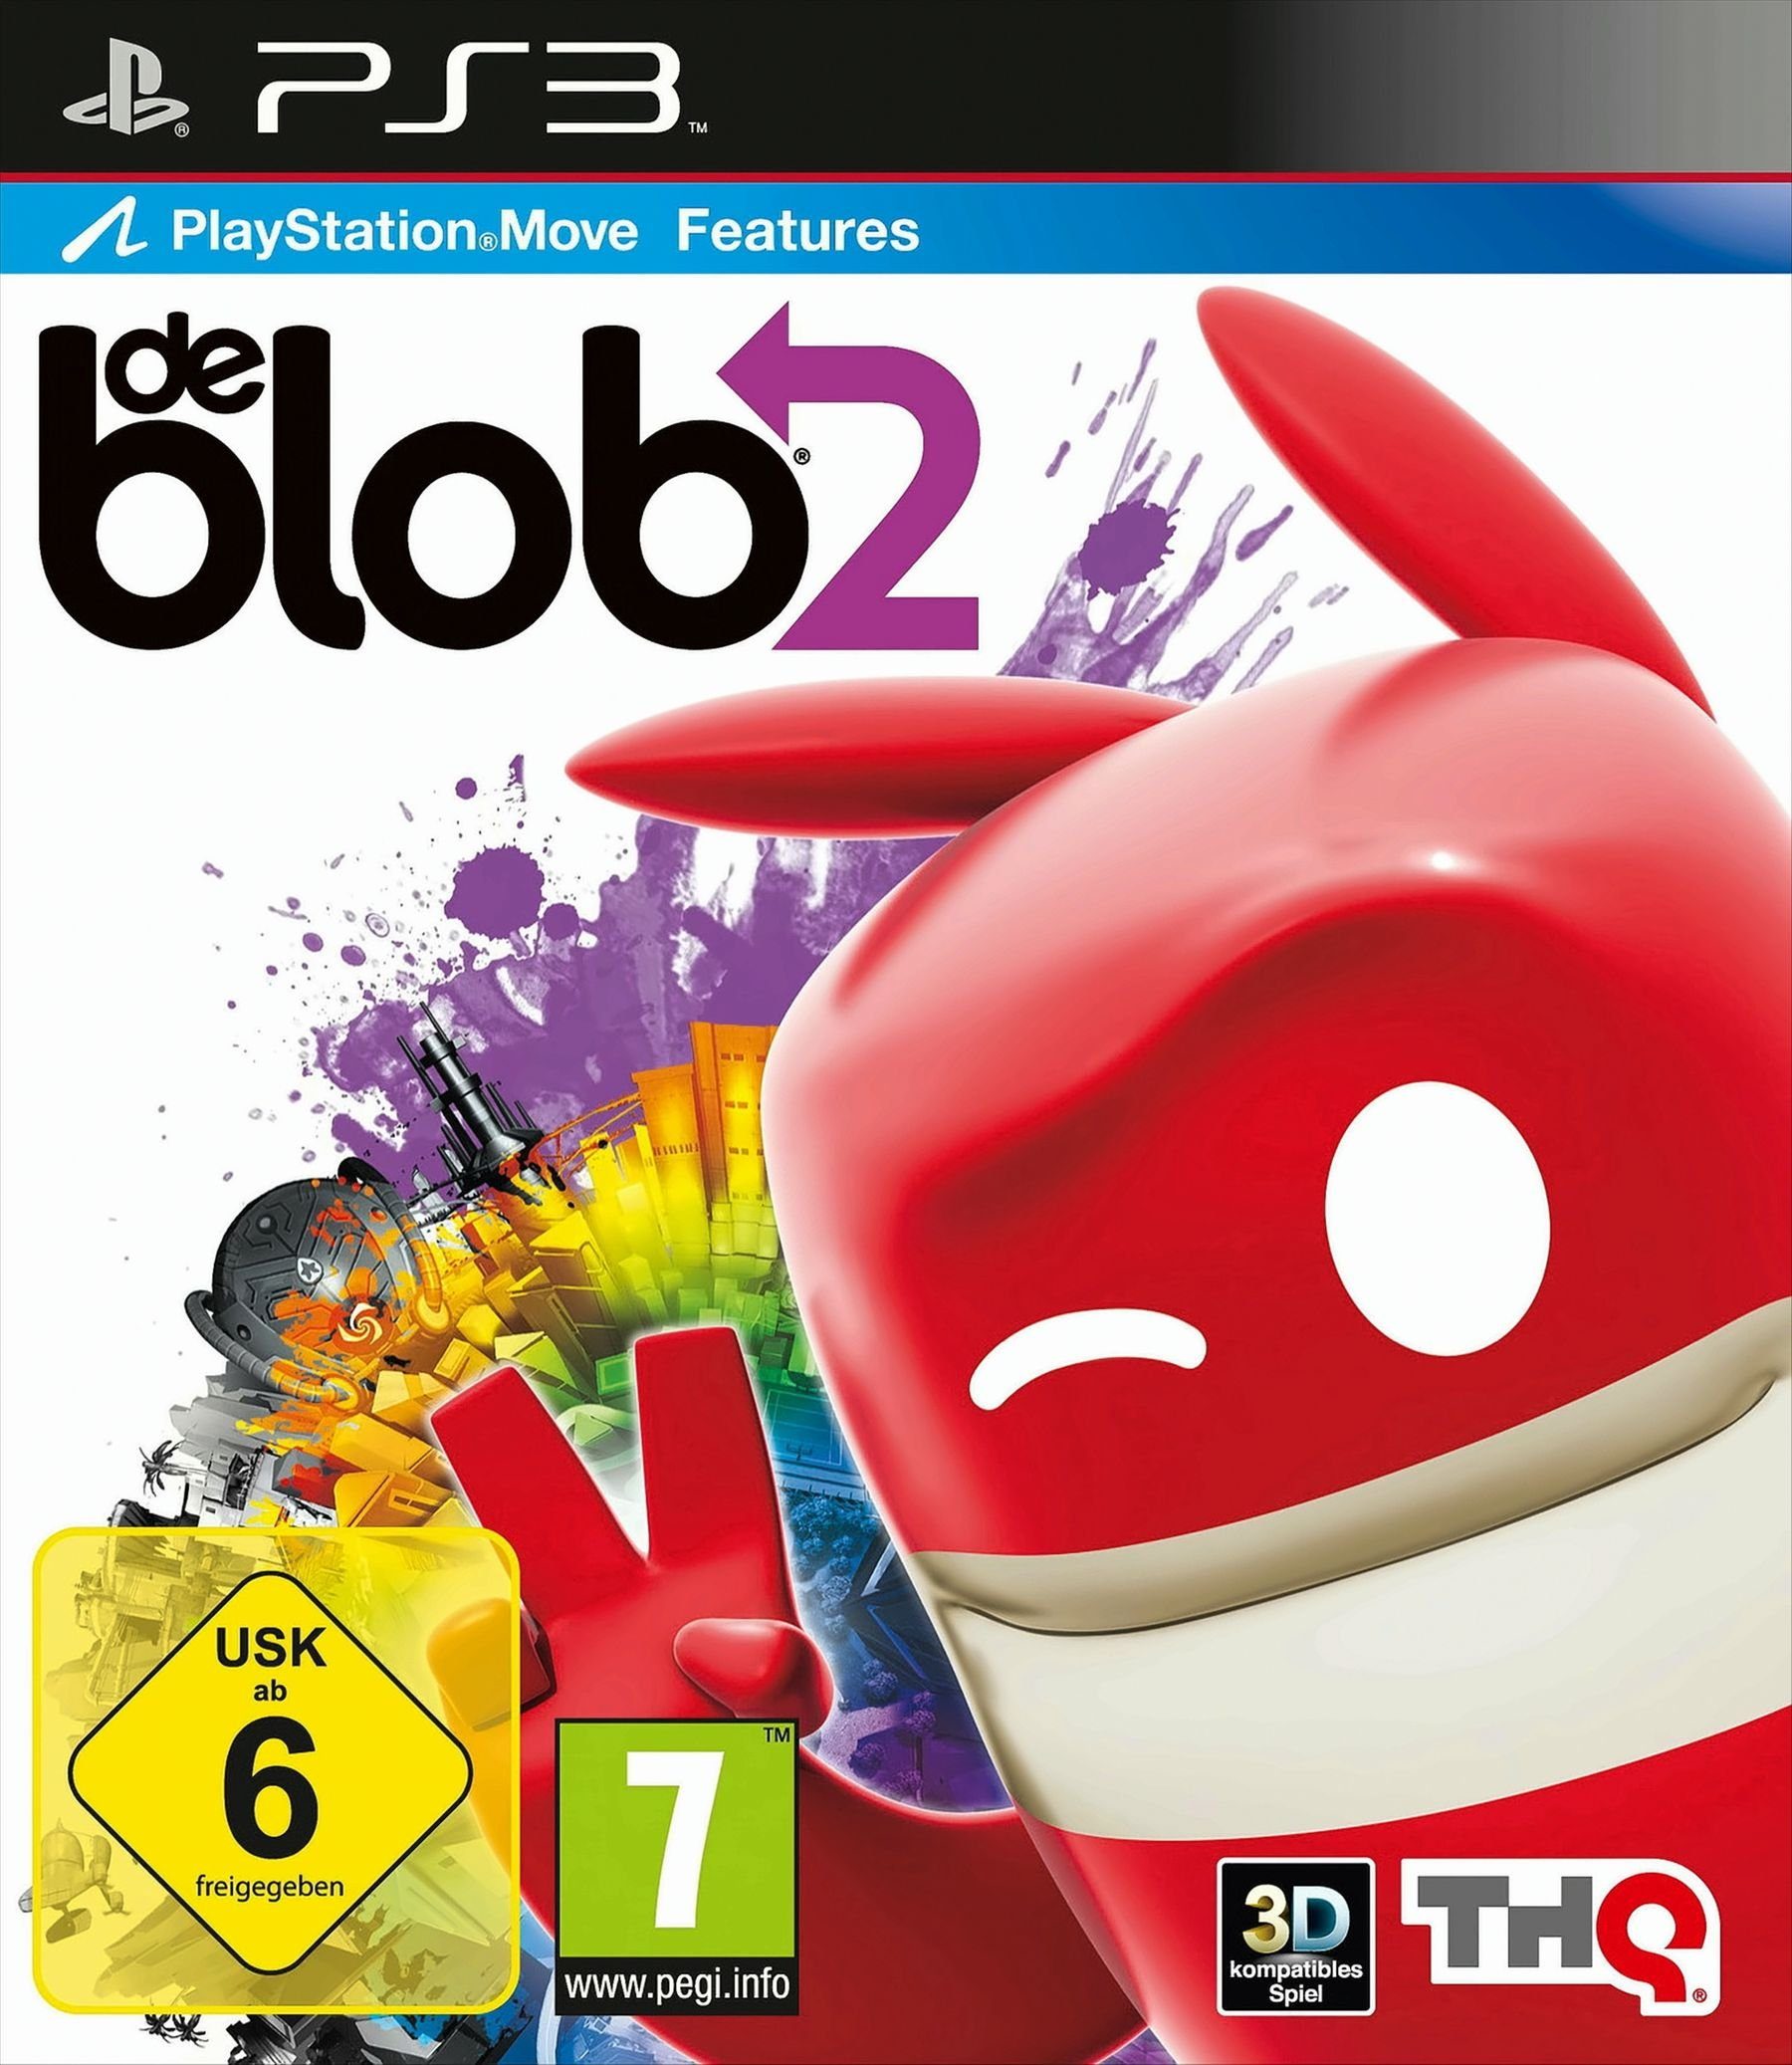 de Blob 2 Playstation 3